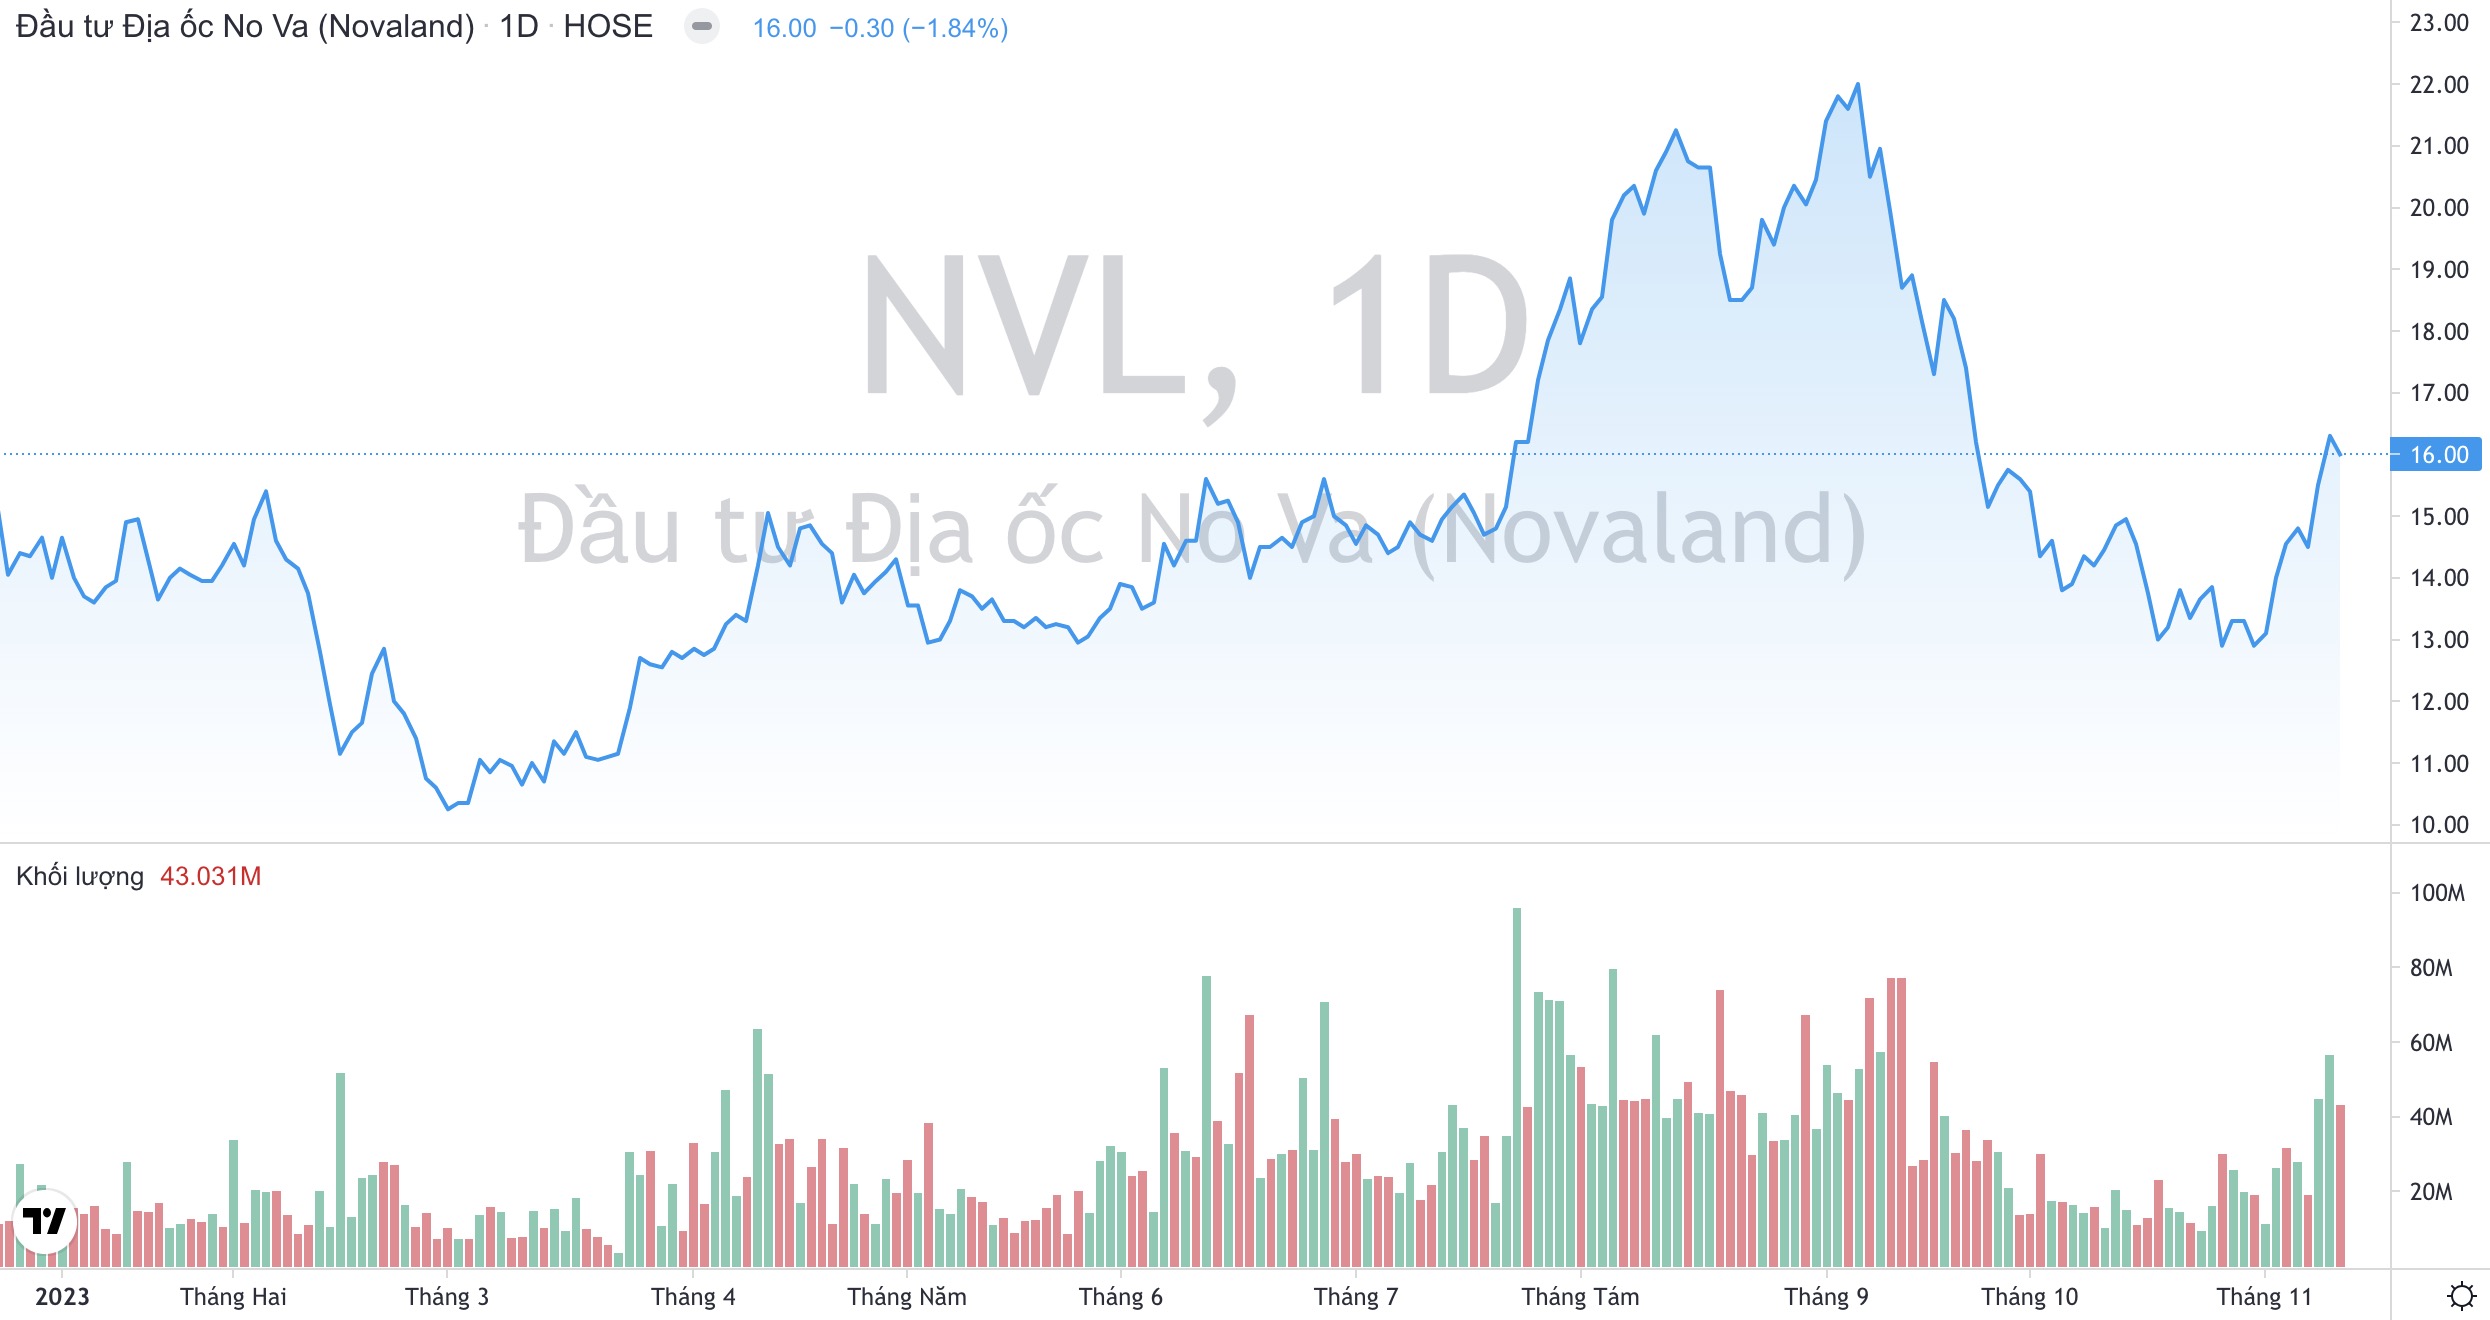 Loạt động thái mới của Tập đoàn Novaland NVL trong việc xử lý nợ trái phiếu quá hạn 2